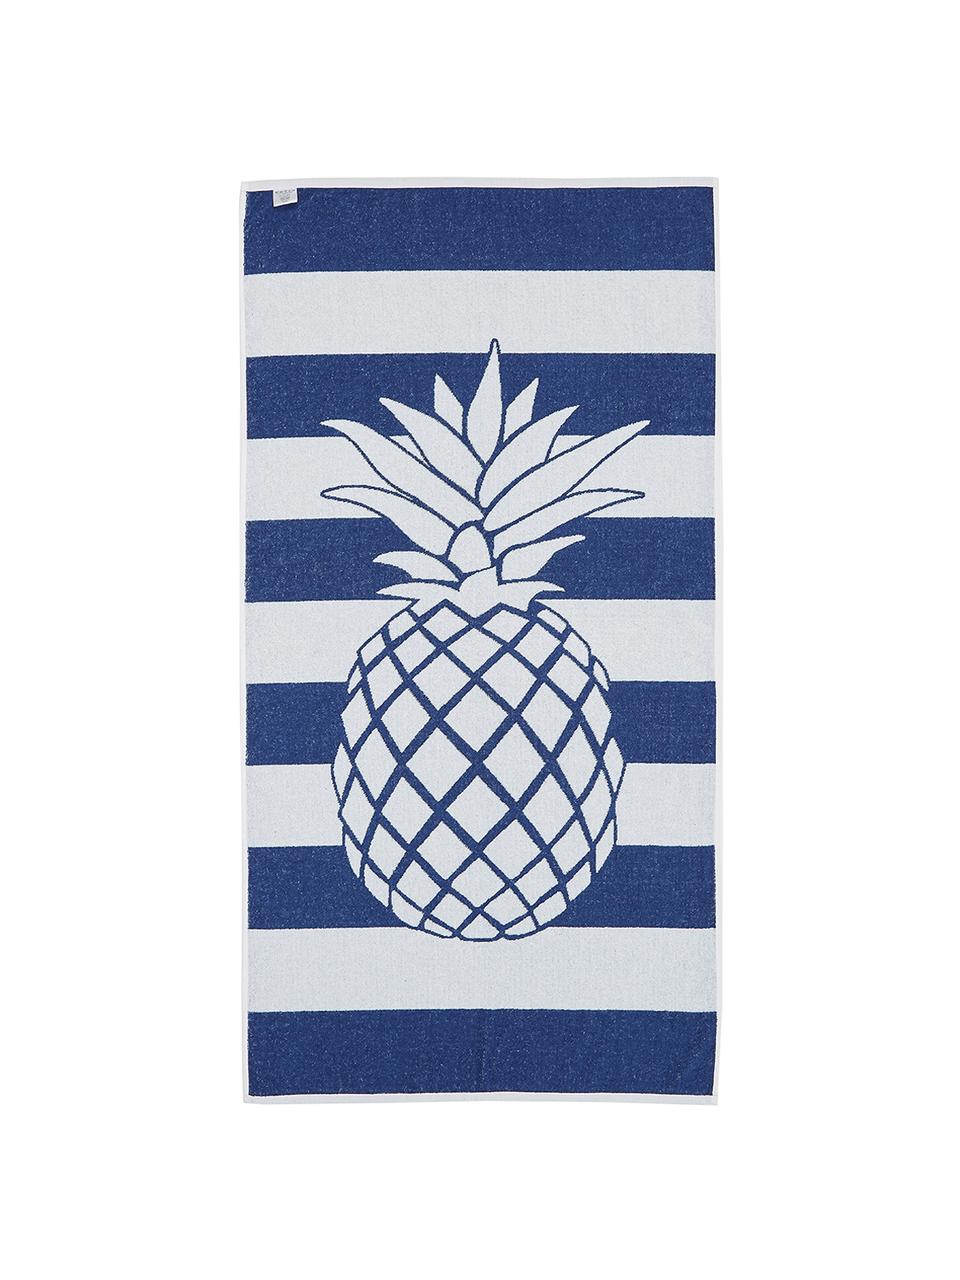 Gestreiftes Strandtuch Asan mit Ananas-Motiv, 100% Baumwolle
leichte Qualität 380 g/m², Blau, Weiß, 80 x 160 cm